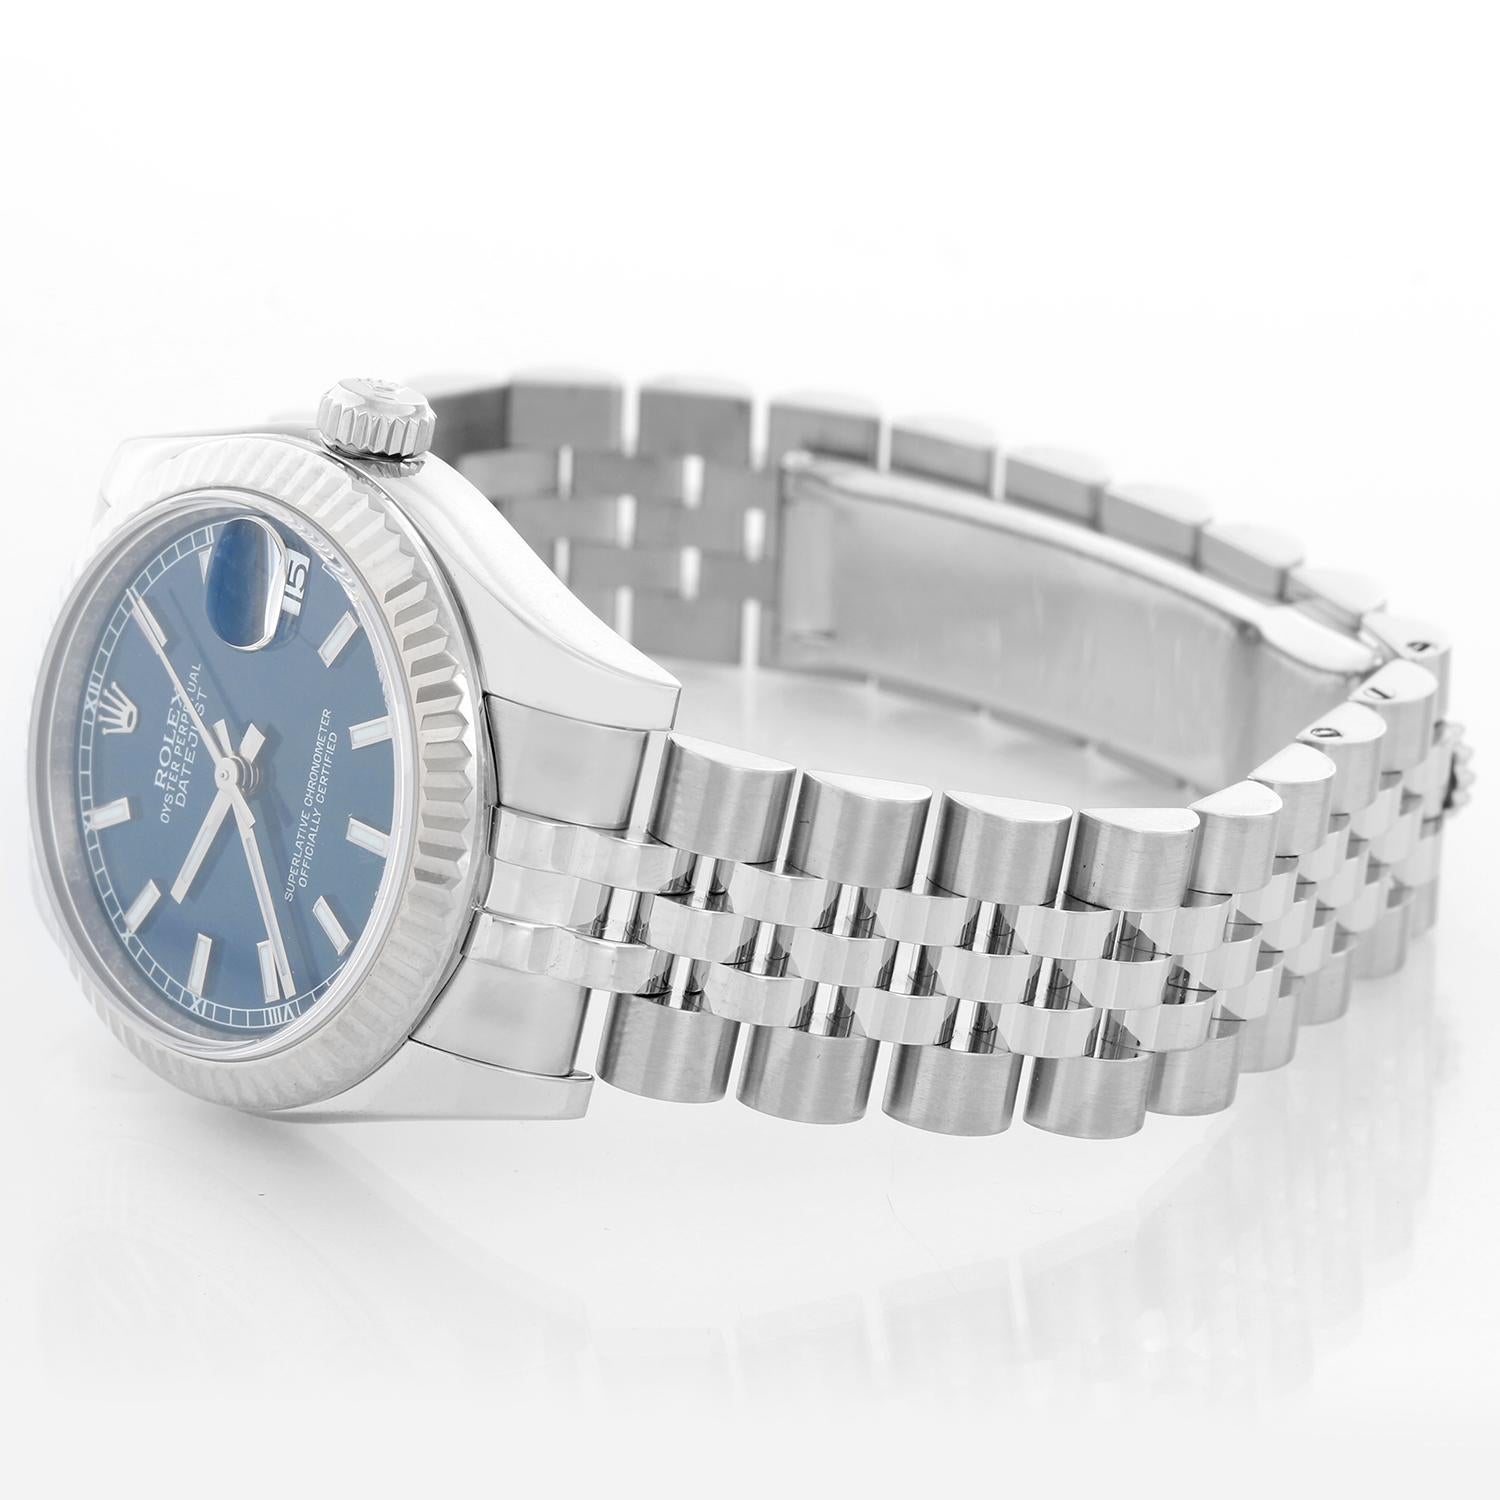 Rolex Datejust Midsize Men's or Ladies Steel Watch 178274 - Remontage automatique ; 31 rubis ; verre saphir. Boîtier en acier inoxydable avec lunette cannelée en or blanc 18 carats (31 mm de diamètre). Cadran bleu avec index bâtons. Bracelet Jubilé